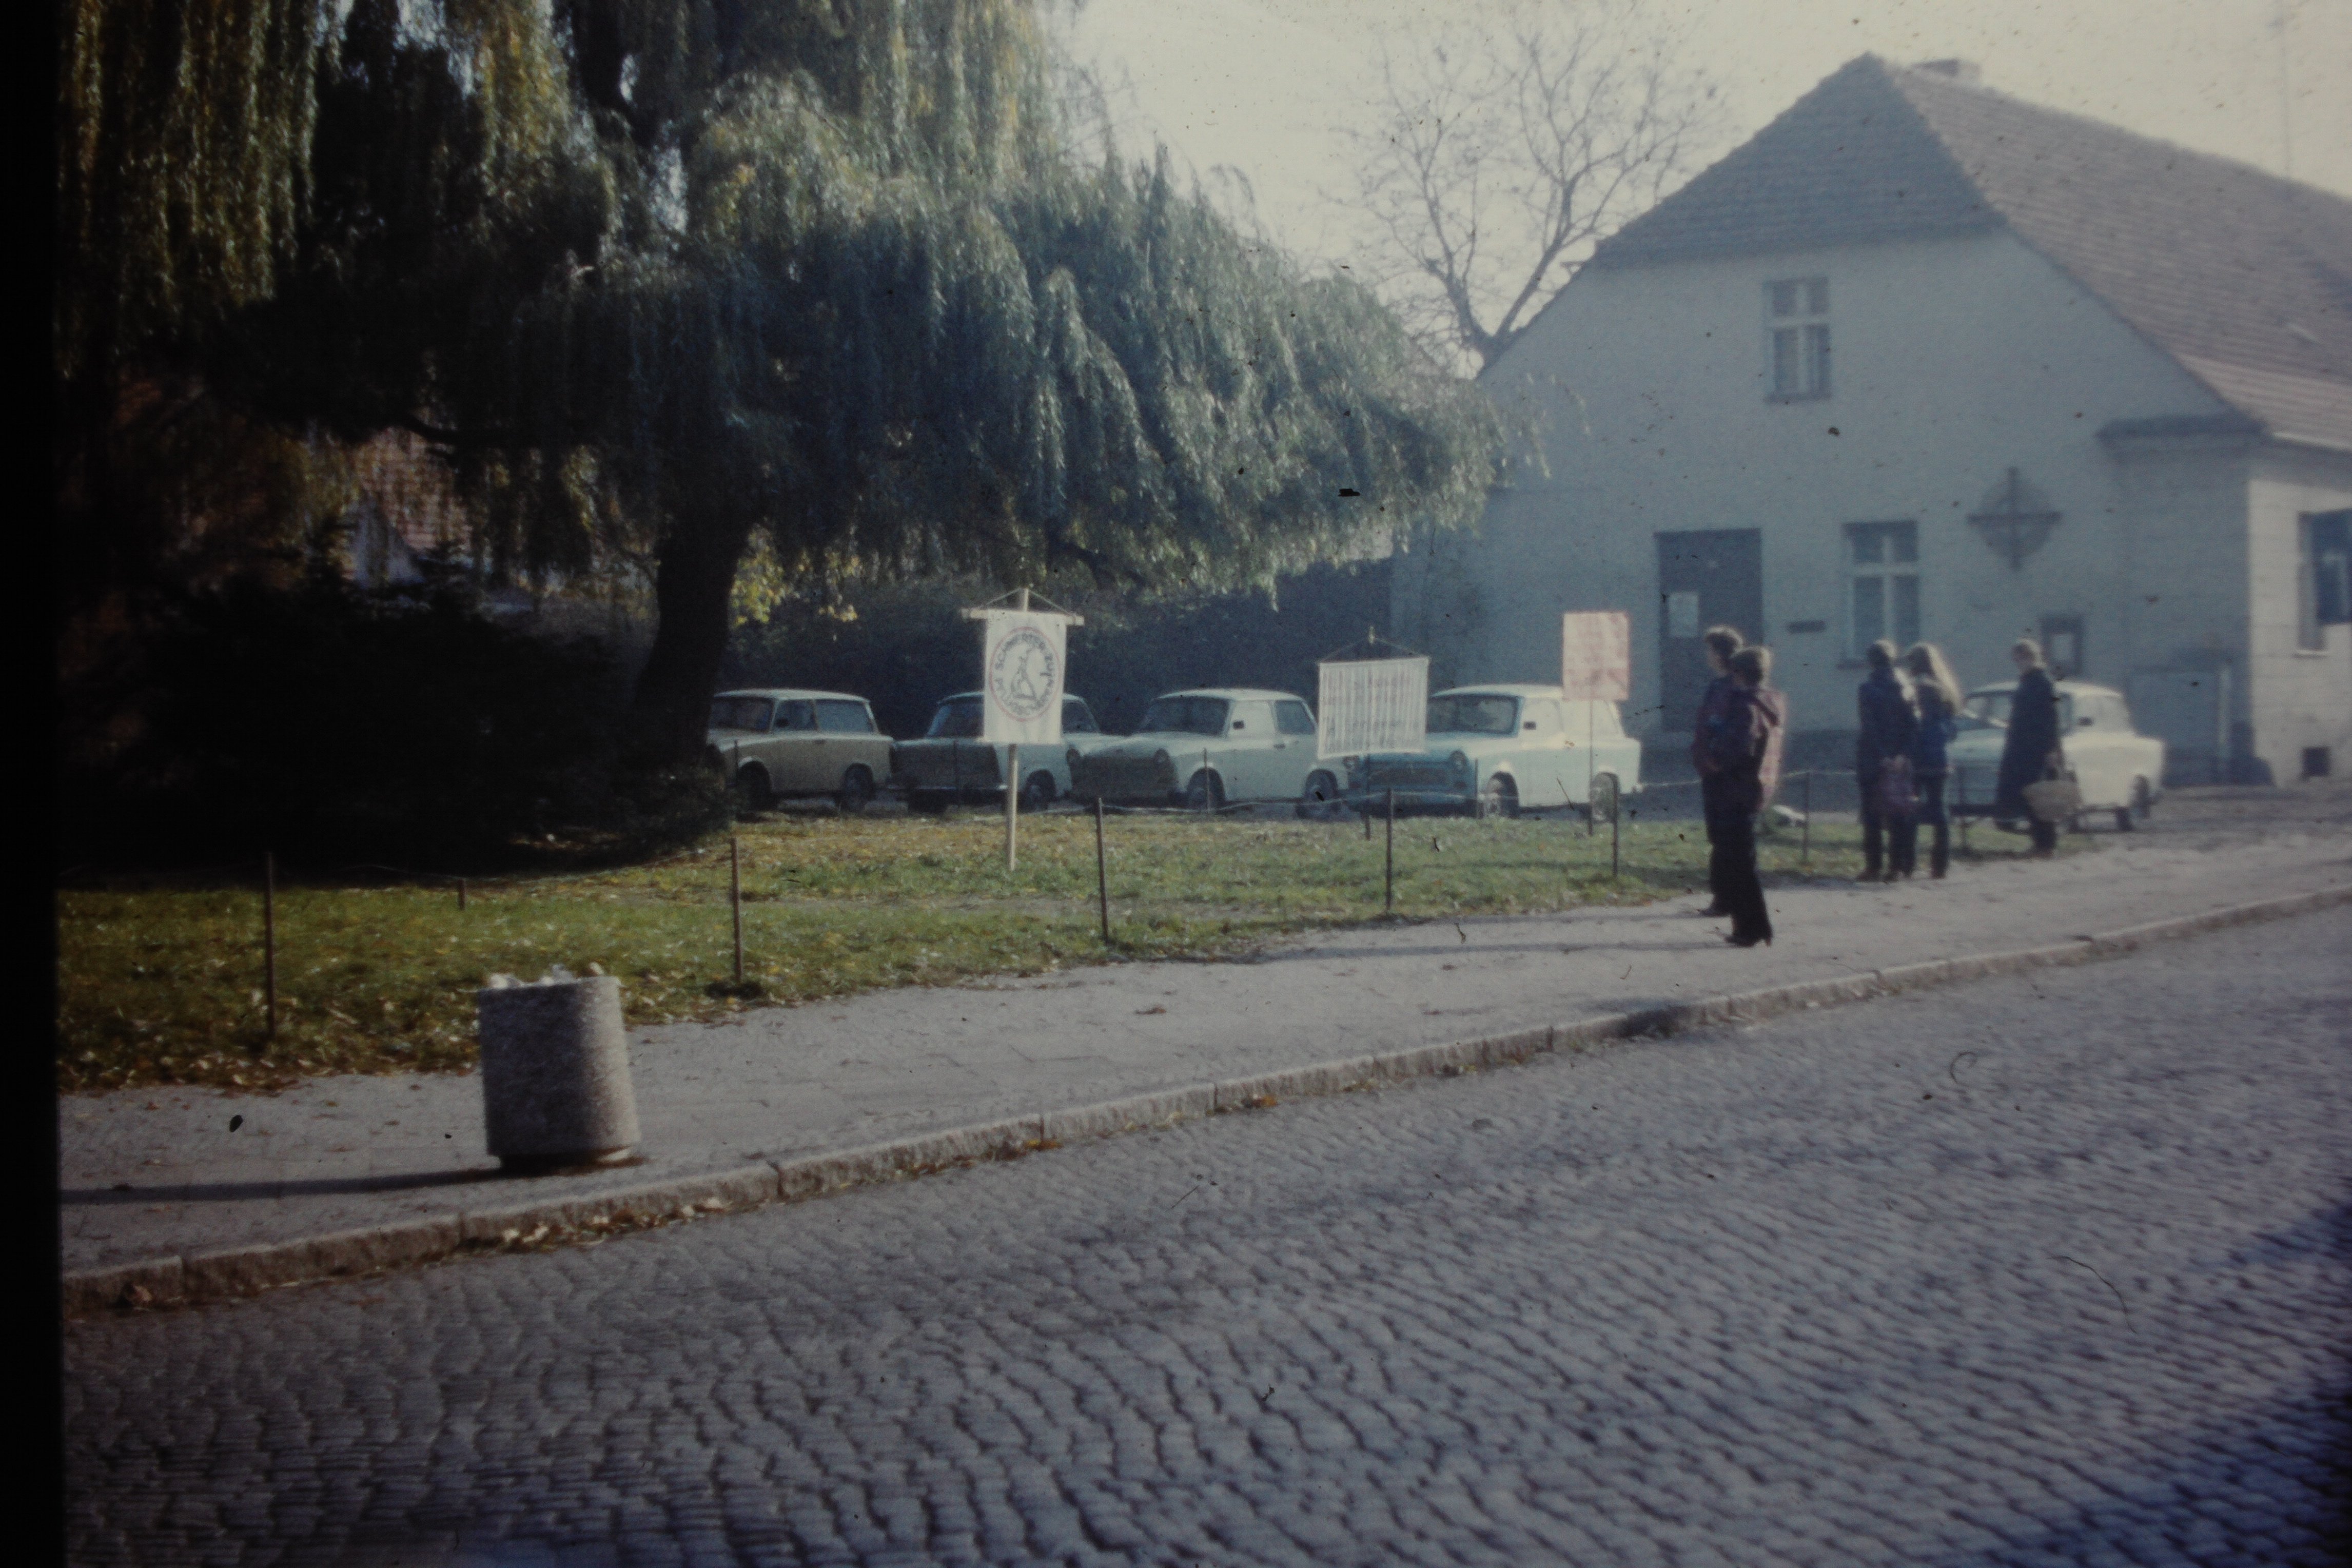 Protest gegen die Stationierung von SS-20-Raketen in Kyritz: Transparente vor dem Köritzer Gemeindehaus (DDR Geschichtsmuseum im Dokumentationszentrum Perleberg CC BY-SA)